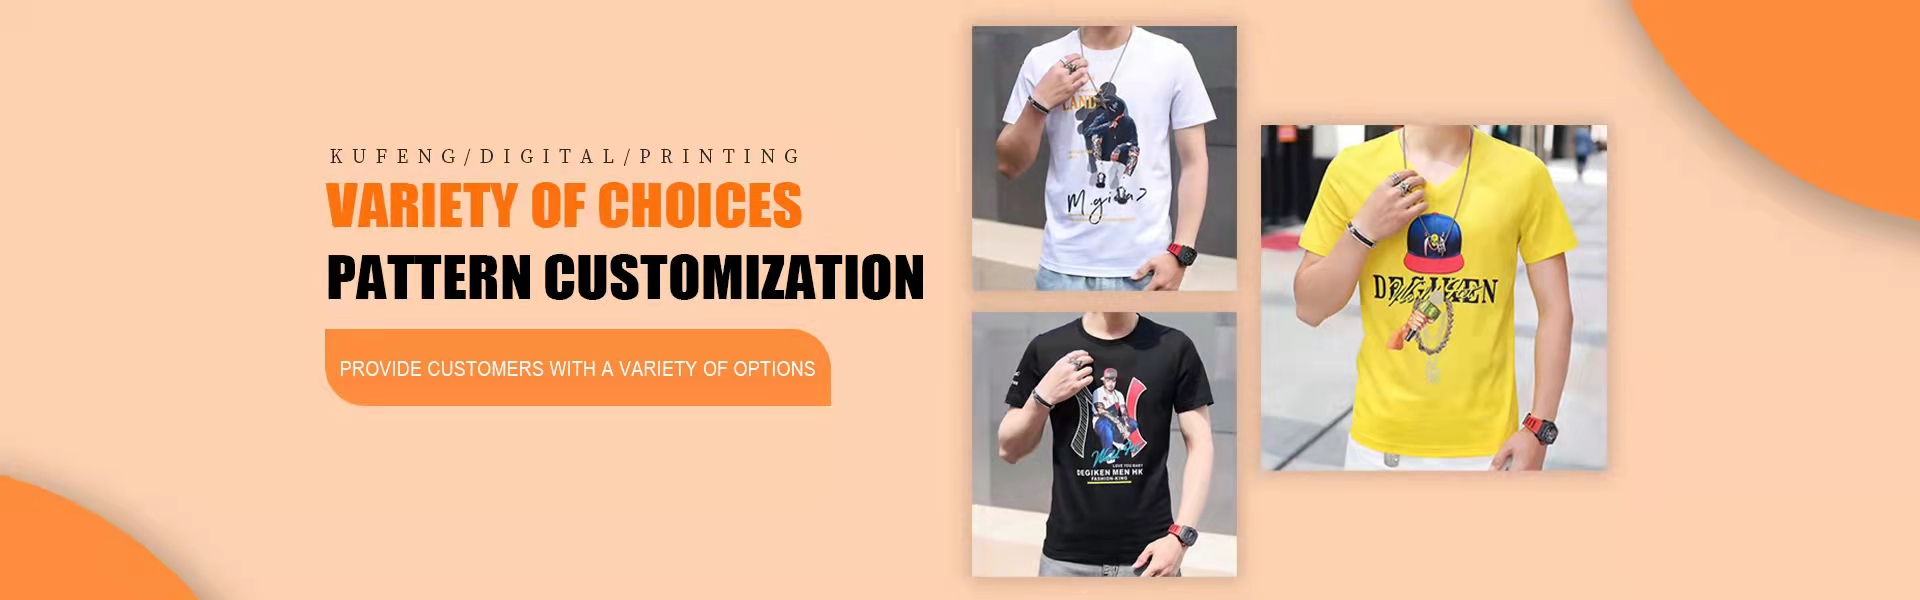 personalización de la personalidad, procesamiento de muestras entrantes, impresión digital,Kufeng digital clothing